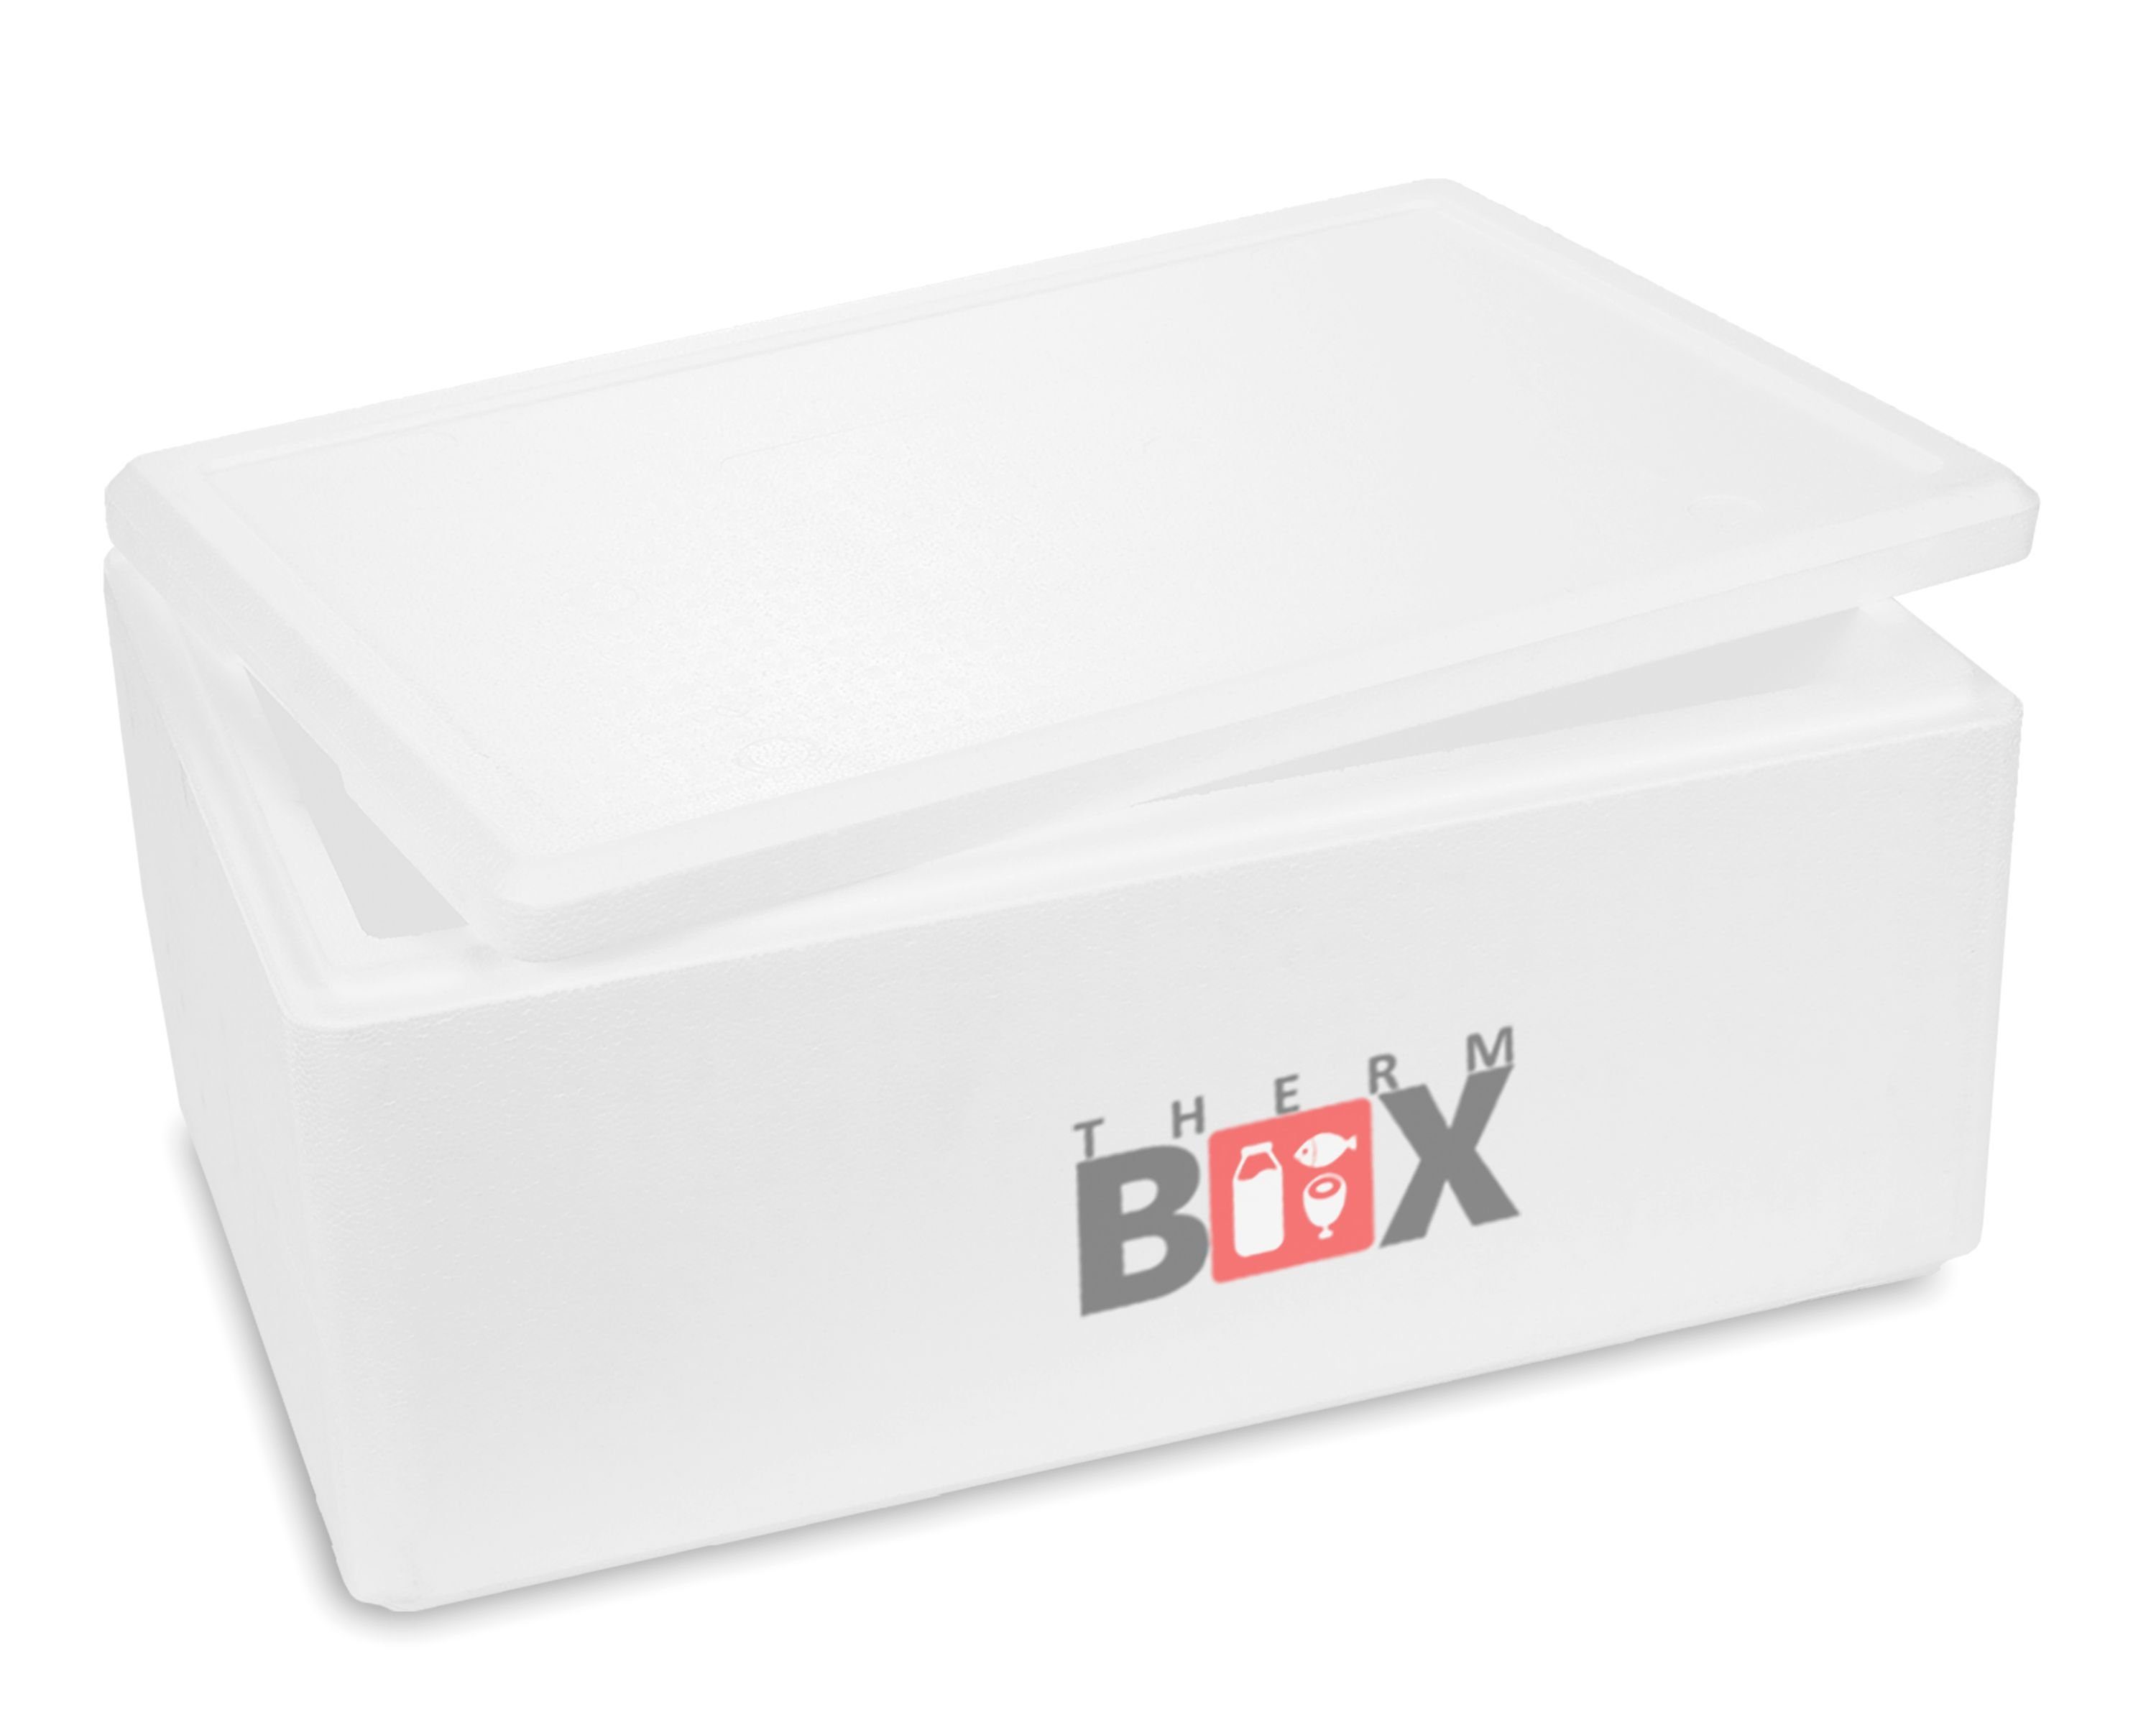 THERM-BOX Thermobehälter Styroporbox Kühlbox Karton), (1, Wiederverwendbar Deckel Wand: Box 0-tlg., Innenmaß:53x33x20cm, 3cm Styropor-Verdichtet, im Warmhaltebox Thermobox 36W Isolierbox mit 36,1L